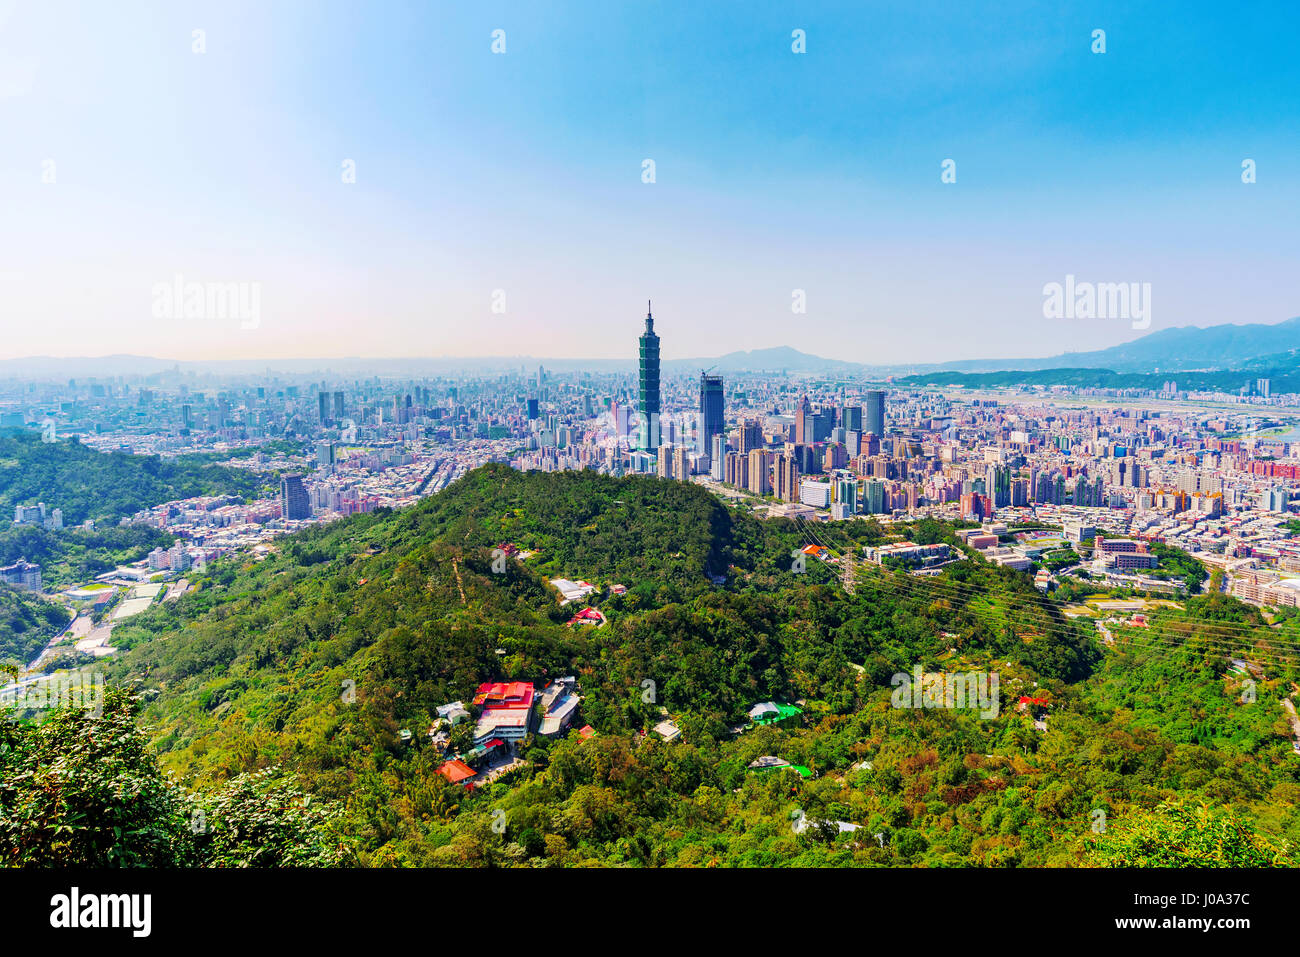 Scenic view of Taipei city taken from a mountain peak Stock Photo